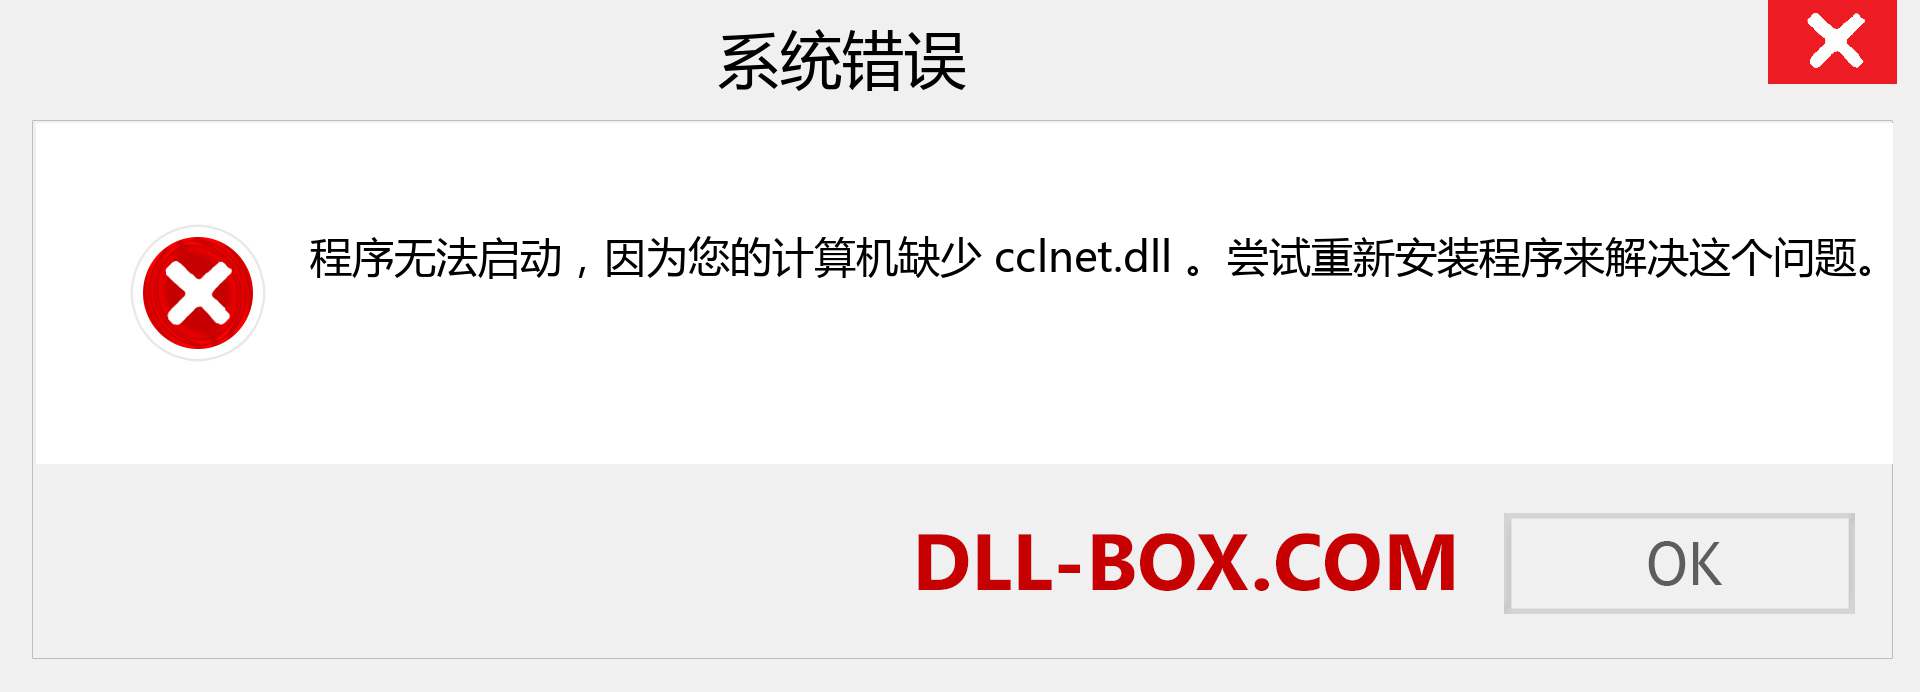 cclnet.dll 文件丢失？。 适用于 Windows 7、8、10 的下载 - 修复 Windows、照片、图像上的 cclnet dll 丢失错误